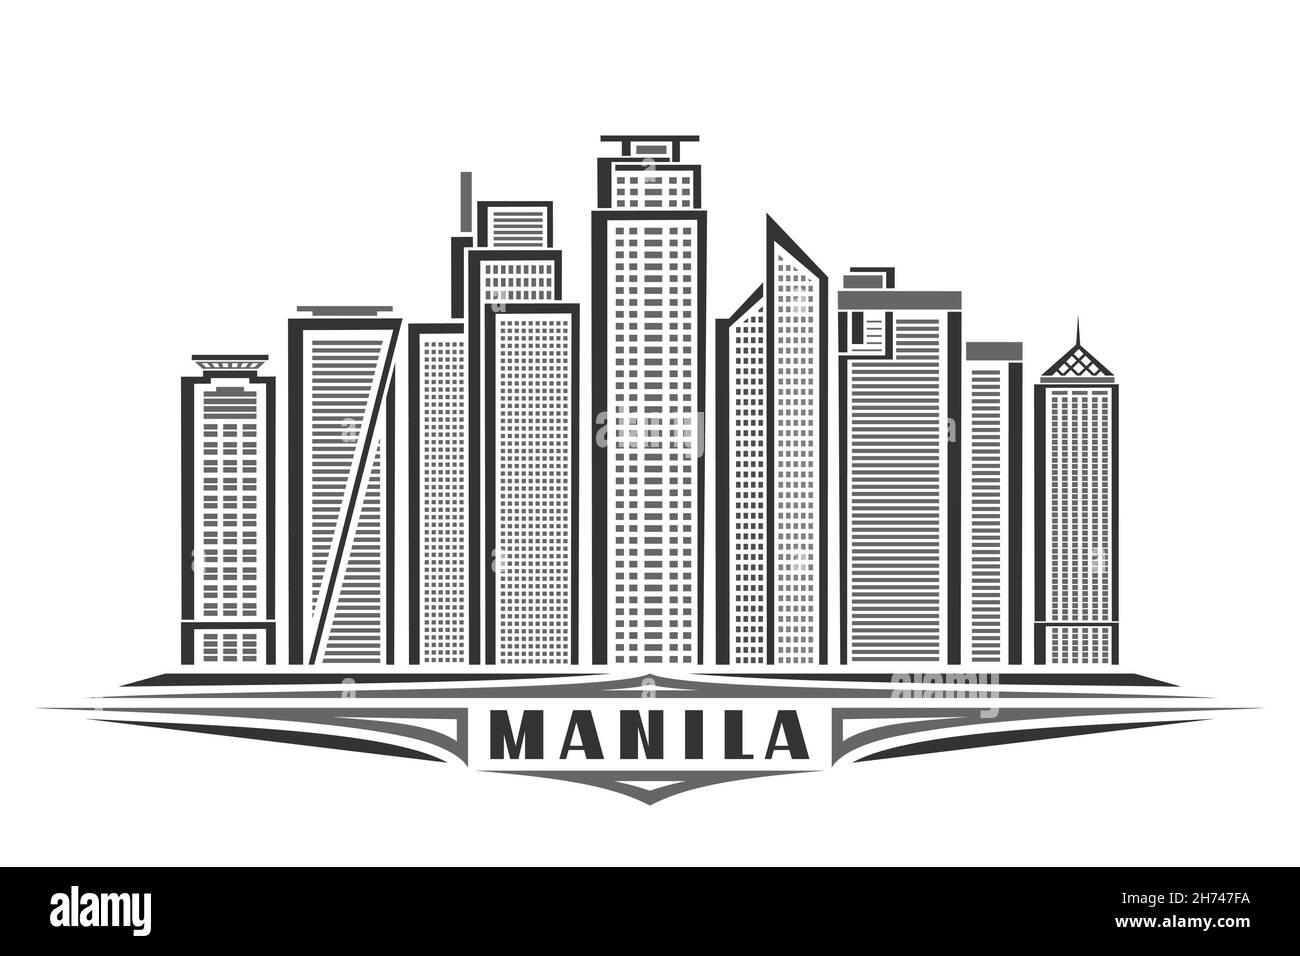 Illustrazione vettoriale di Manila, poster orizzontale monocromatico con disegno lineare famoso paesaggio cittadino di manila, concetto di arte urbana con decorazione unica Illustrazione Vettoriale